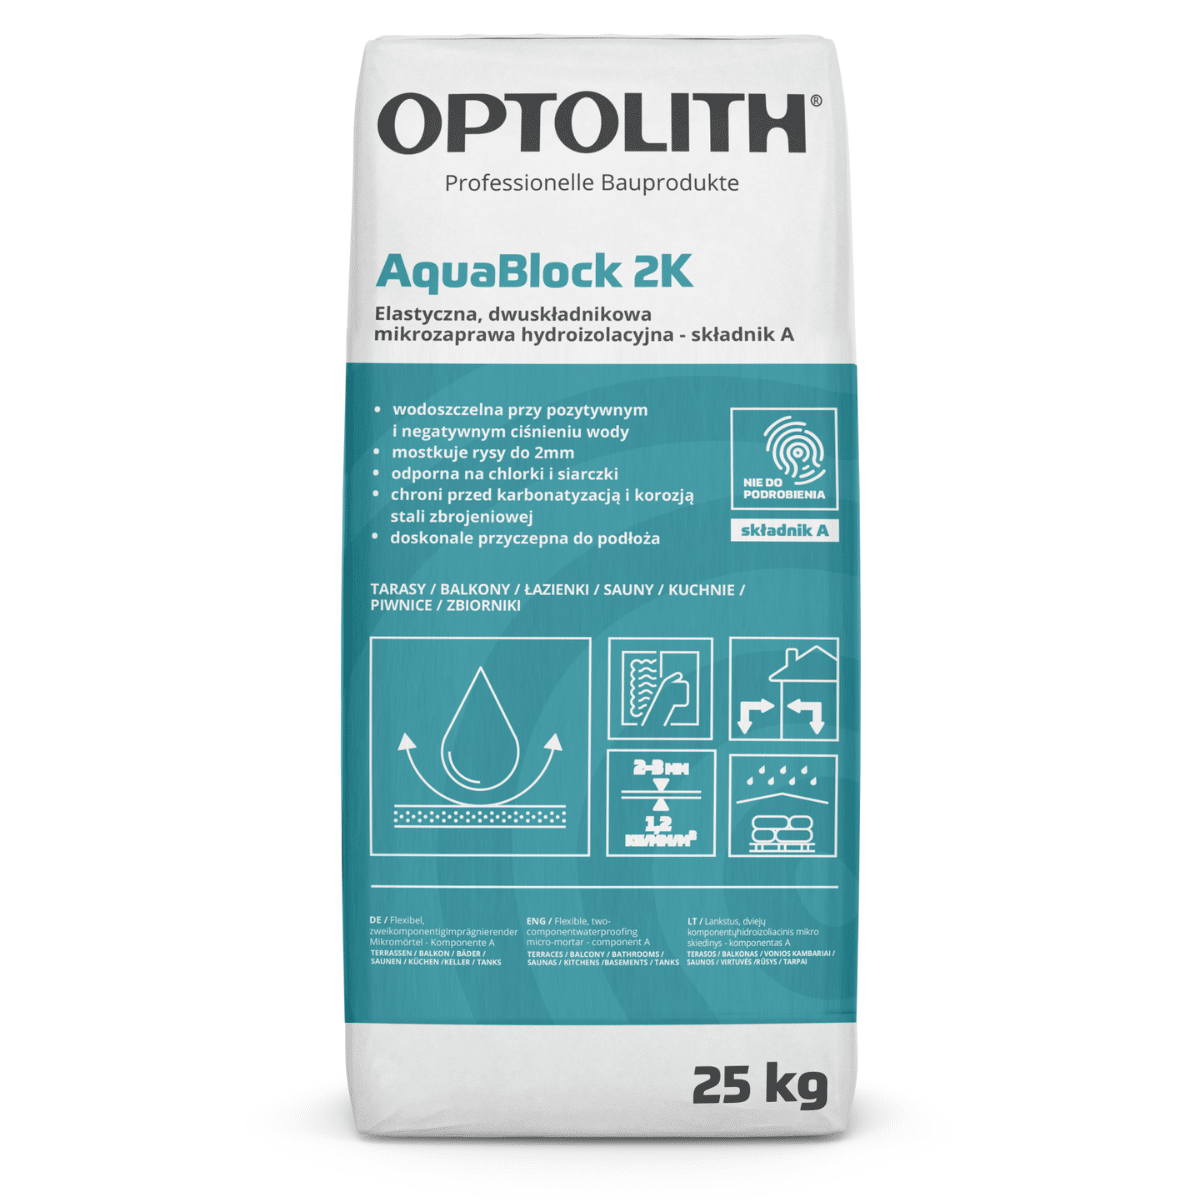 Dwuskładnikowa mikrozaprawa hydroizolacyjna OPTOSTOP AquaBlock 2K 25kg + 8,5kg Optolith